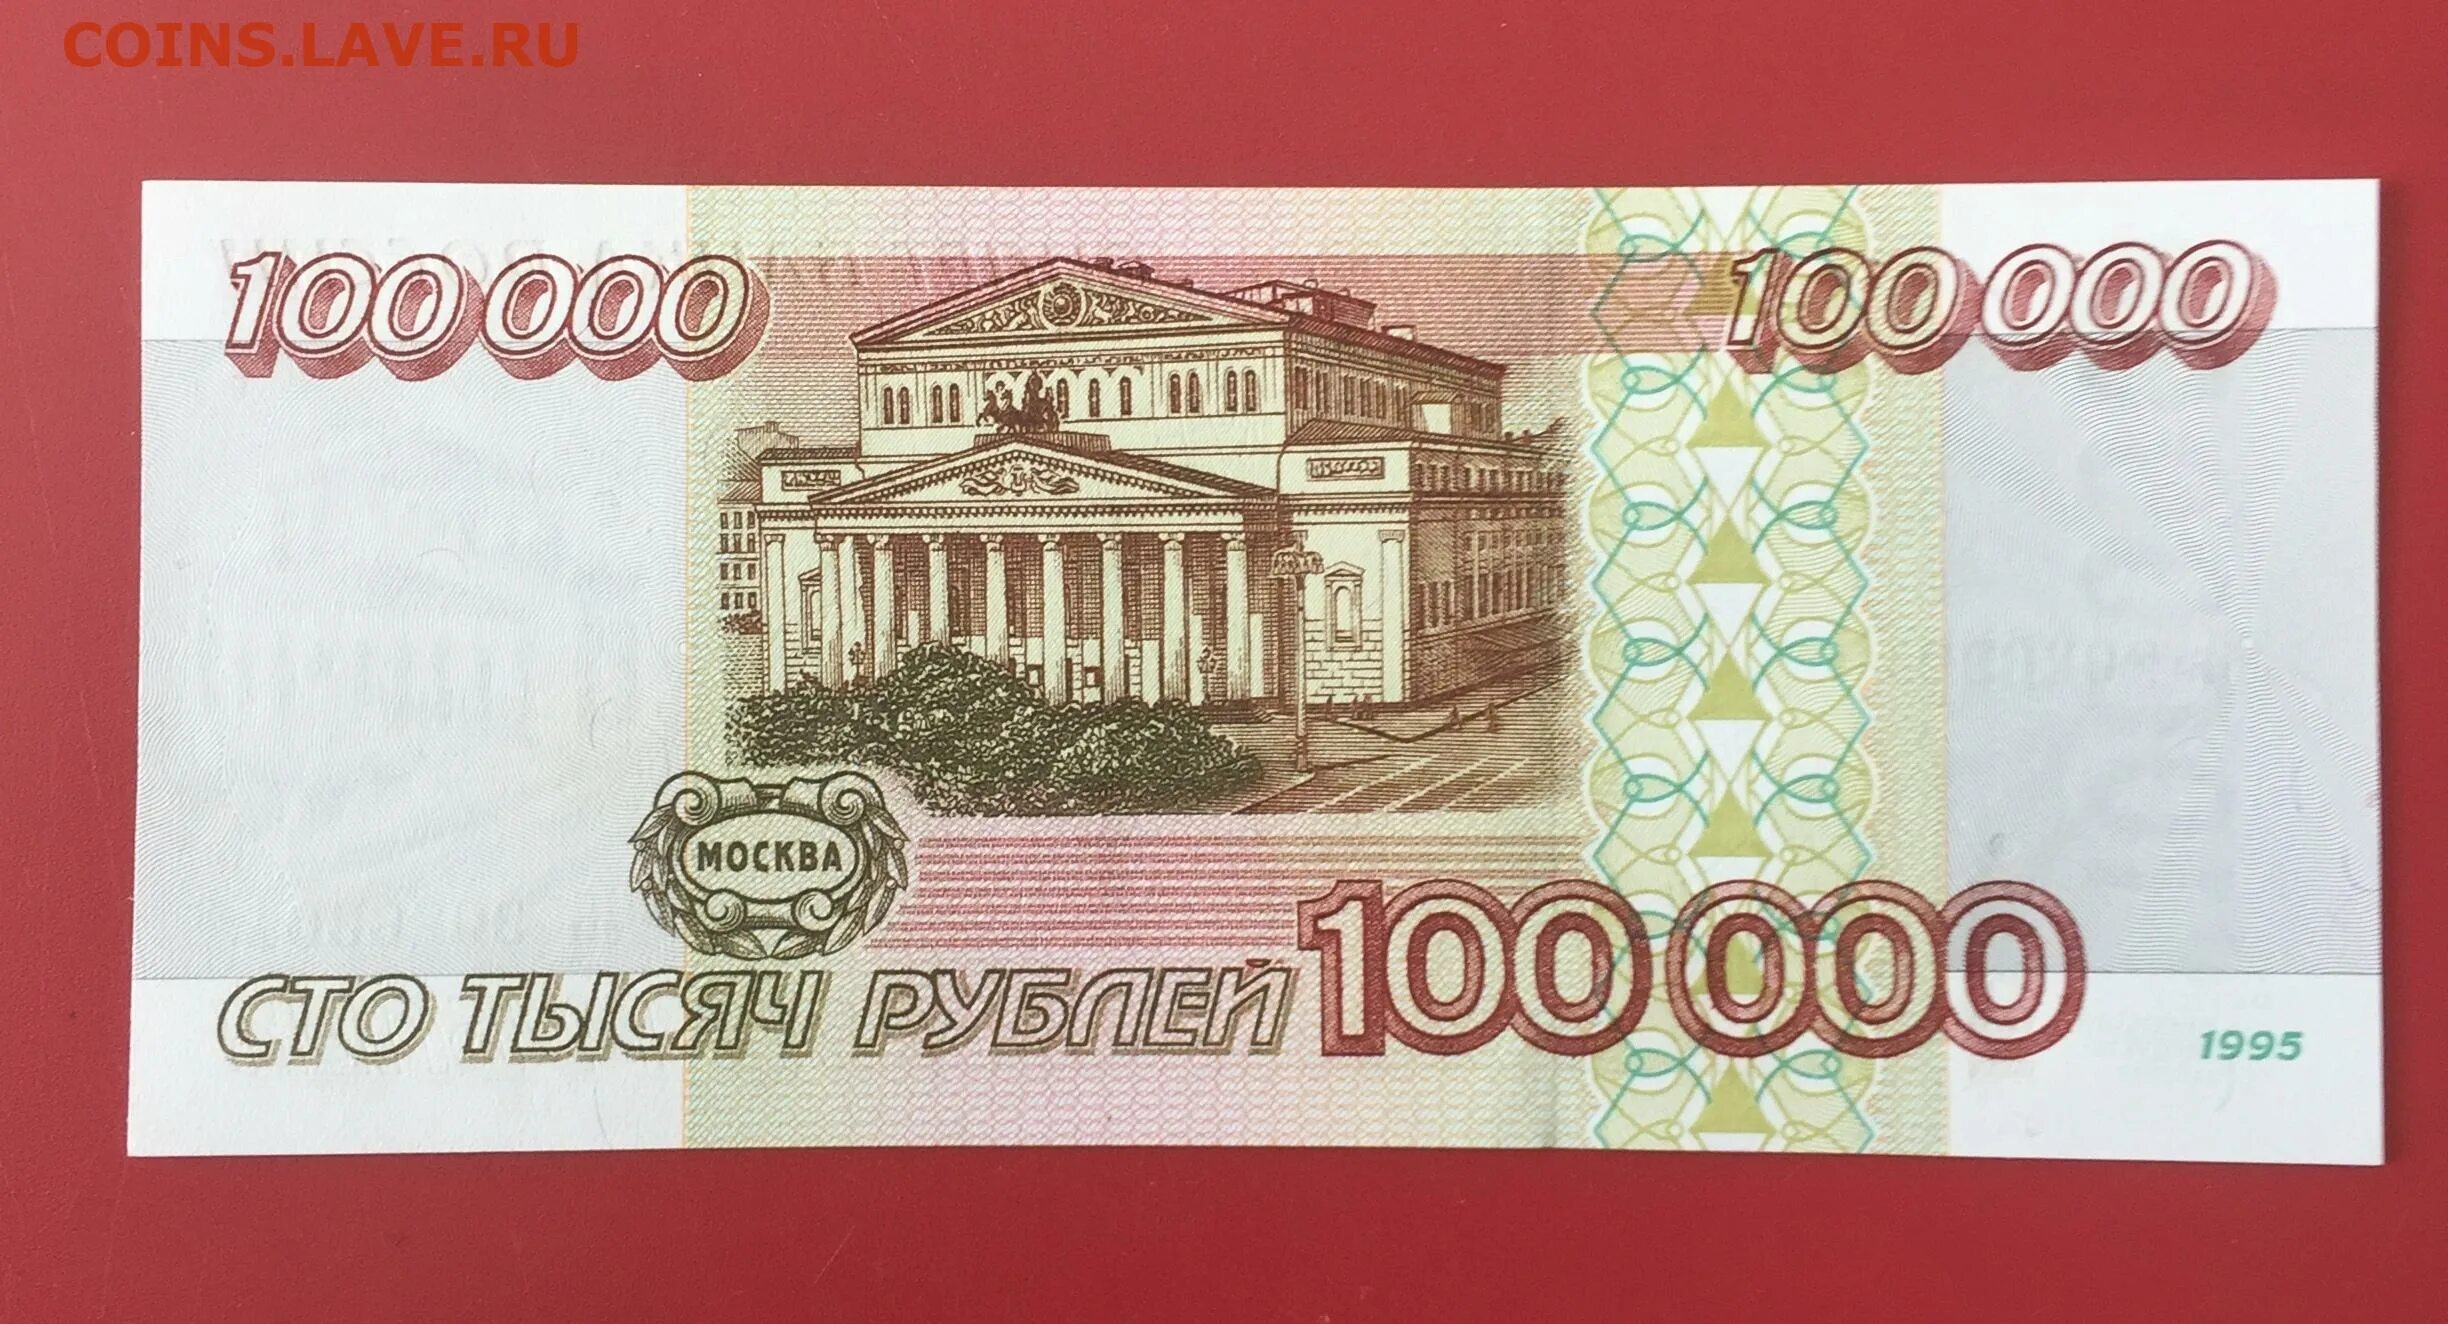 10 000 Рублей. 100000 Рублей в 1998 году. Ноль рублей. Рубль России.